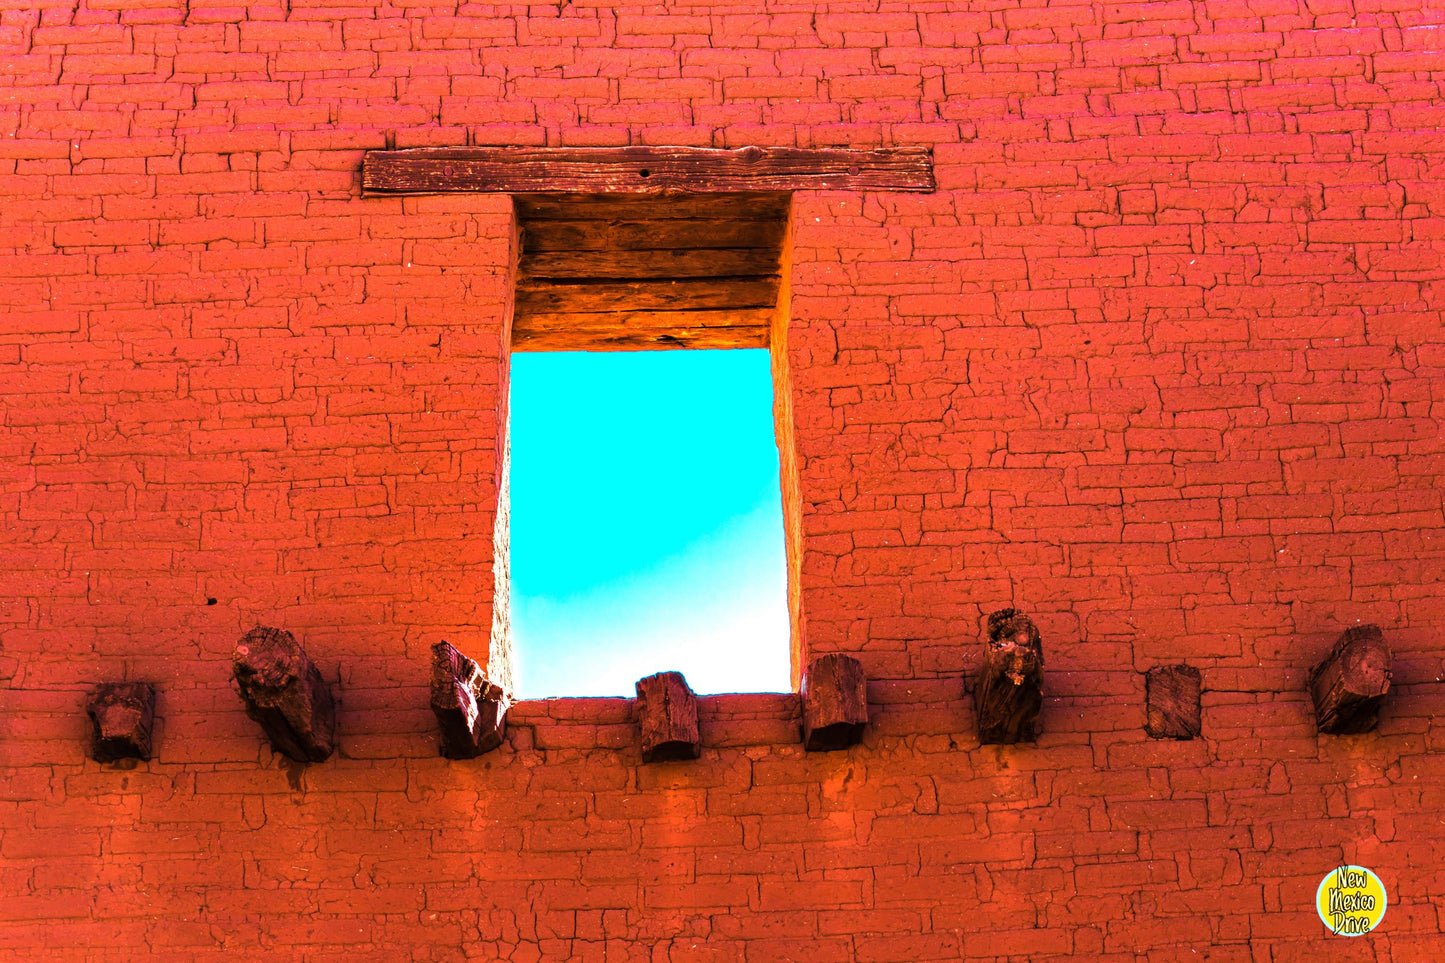 Pecos Wall Window